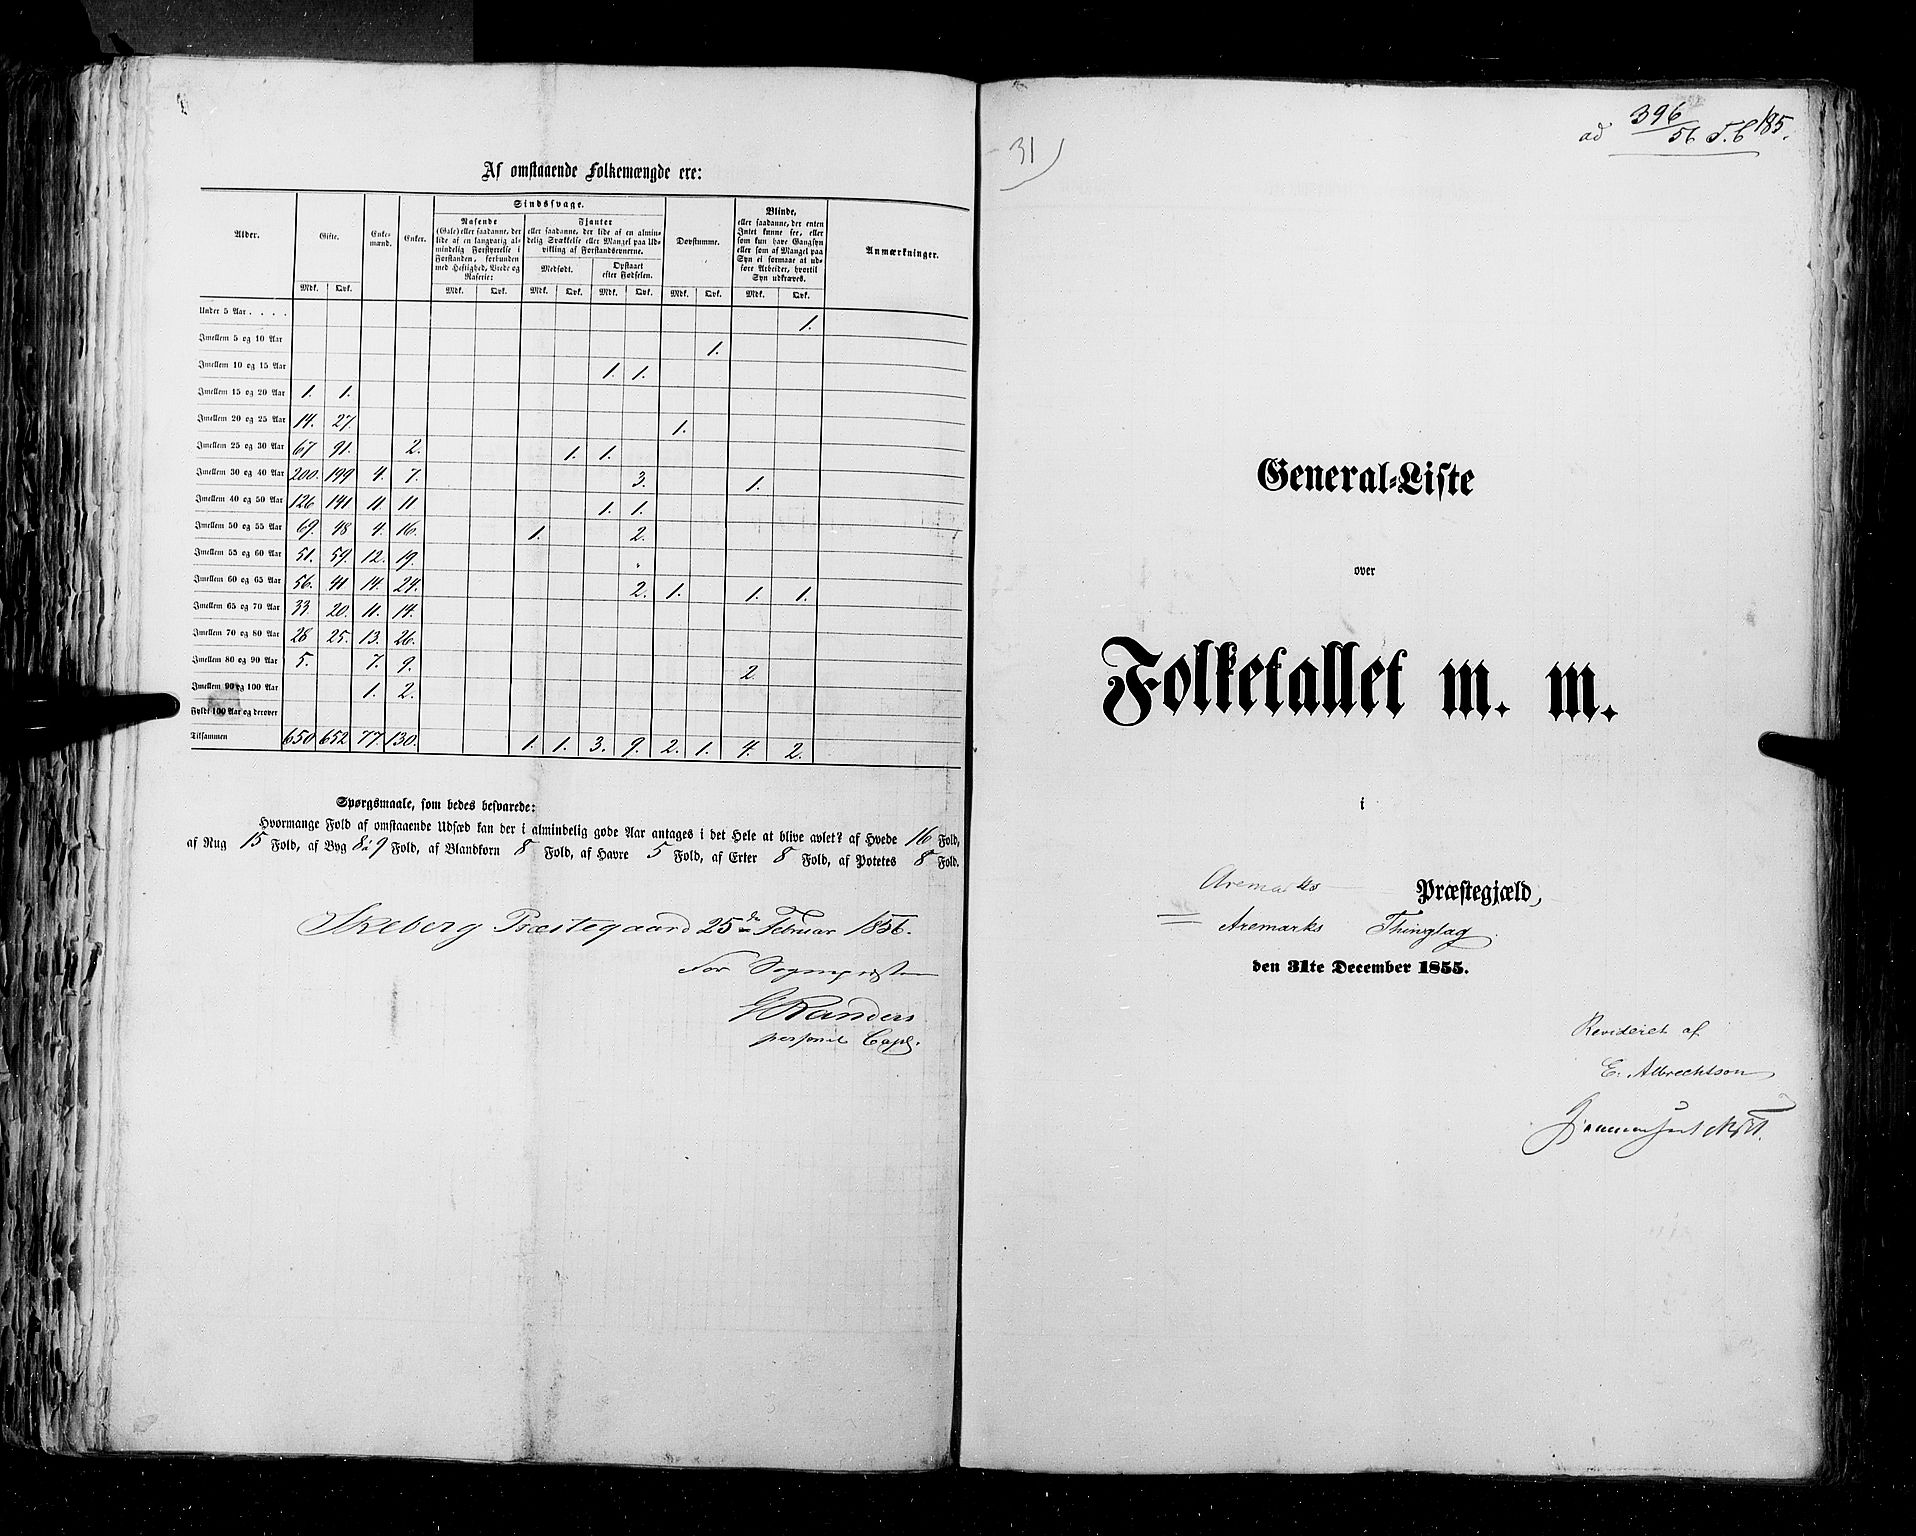 RA, Census 1855, vol. 1: Akershus amt, Smålenenes amt og Hedemarken amt, 1855, p. 185